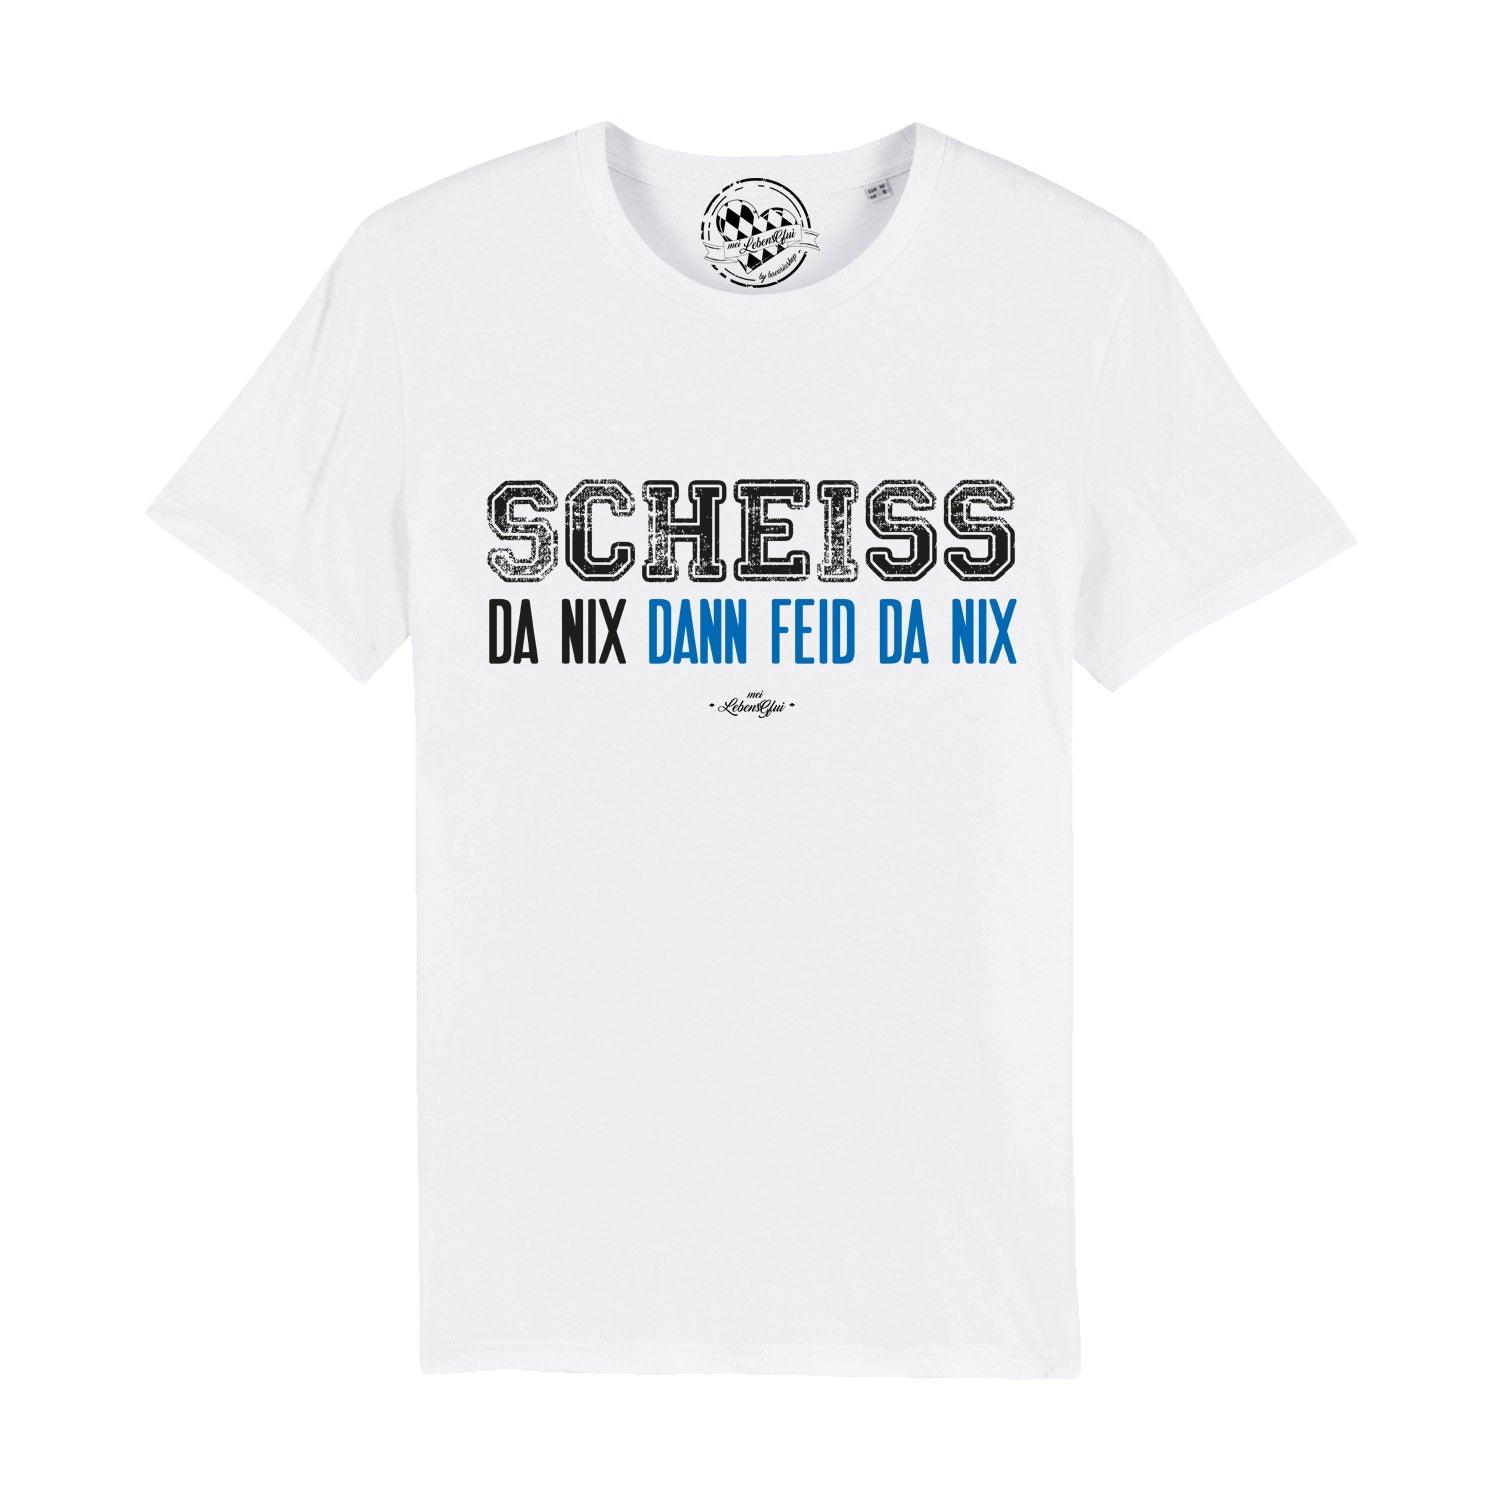 Herren T-Shirt "Scheiß da nix" - bavariashop - mei LebensGfui